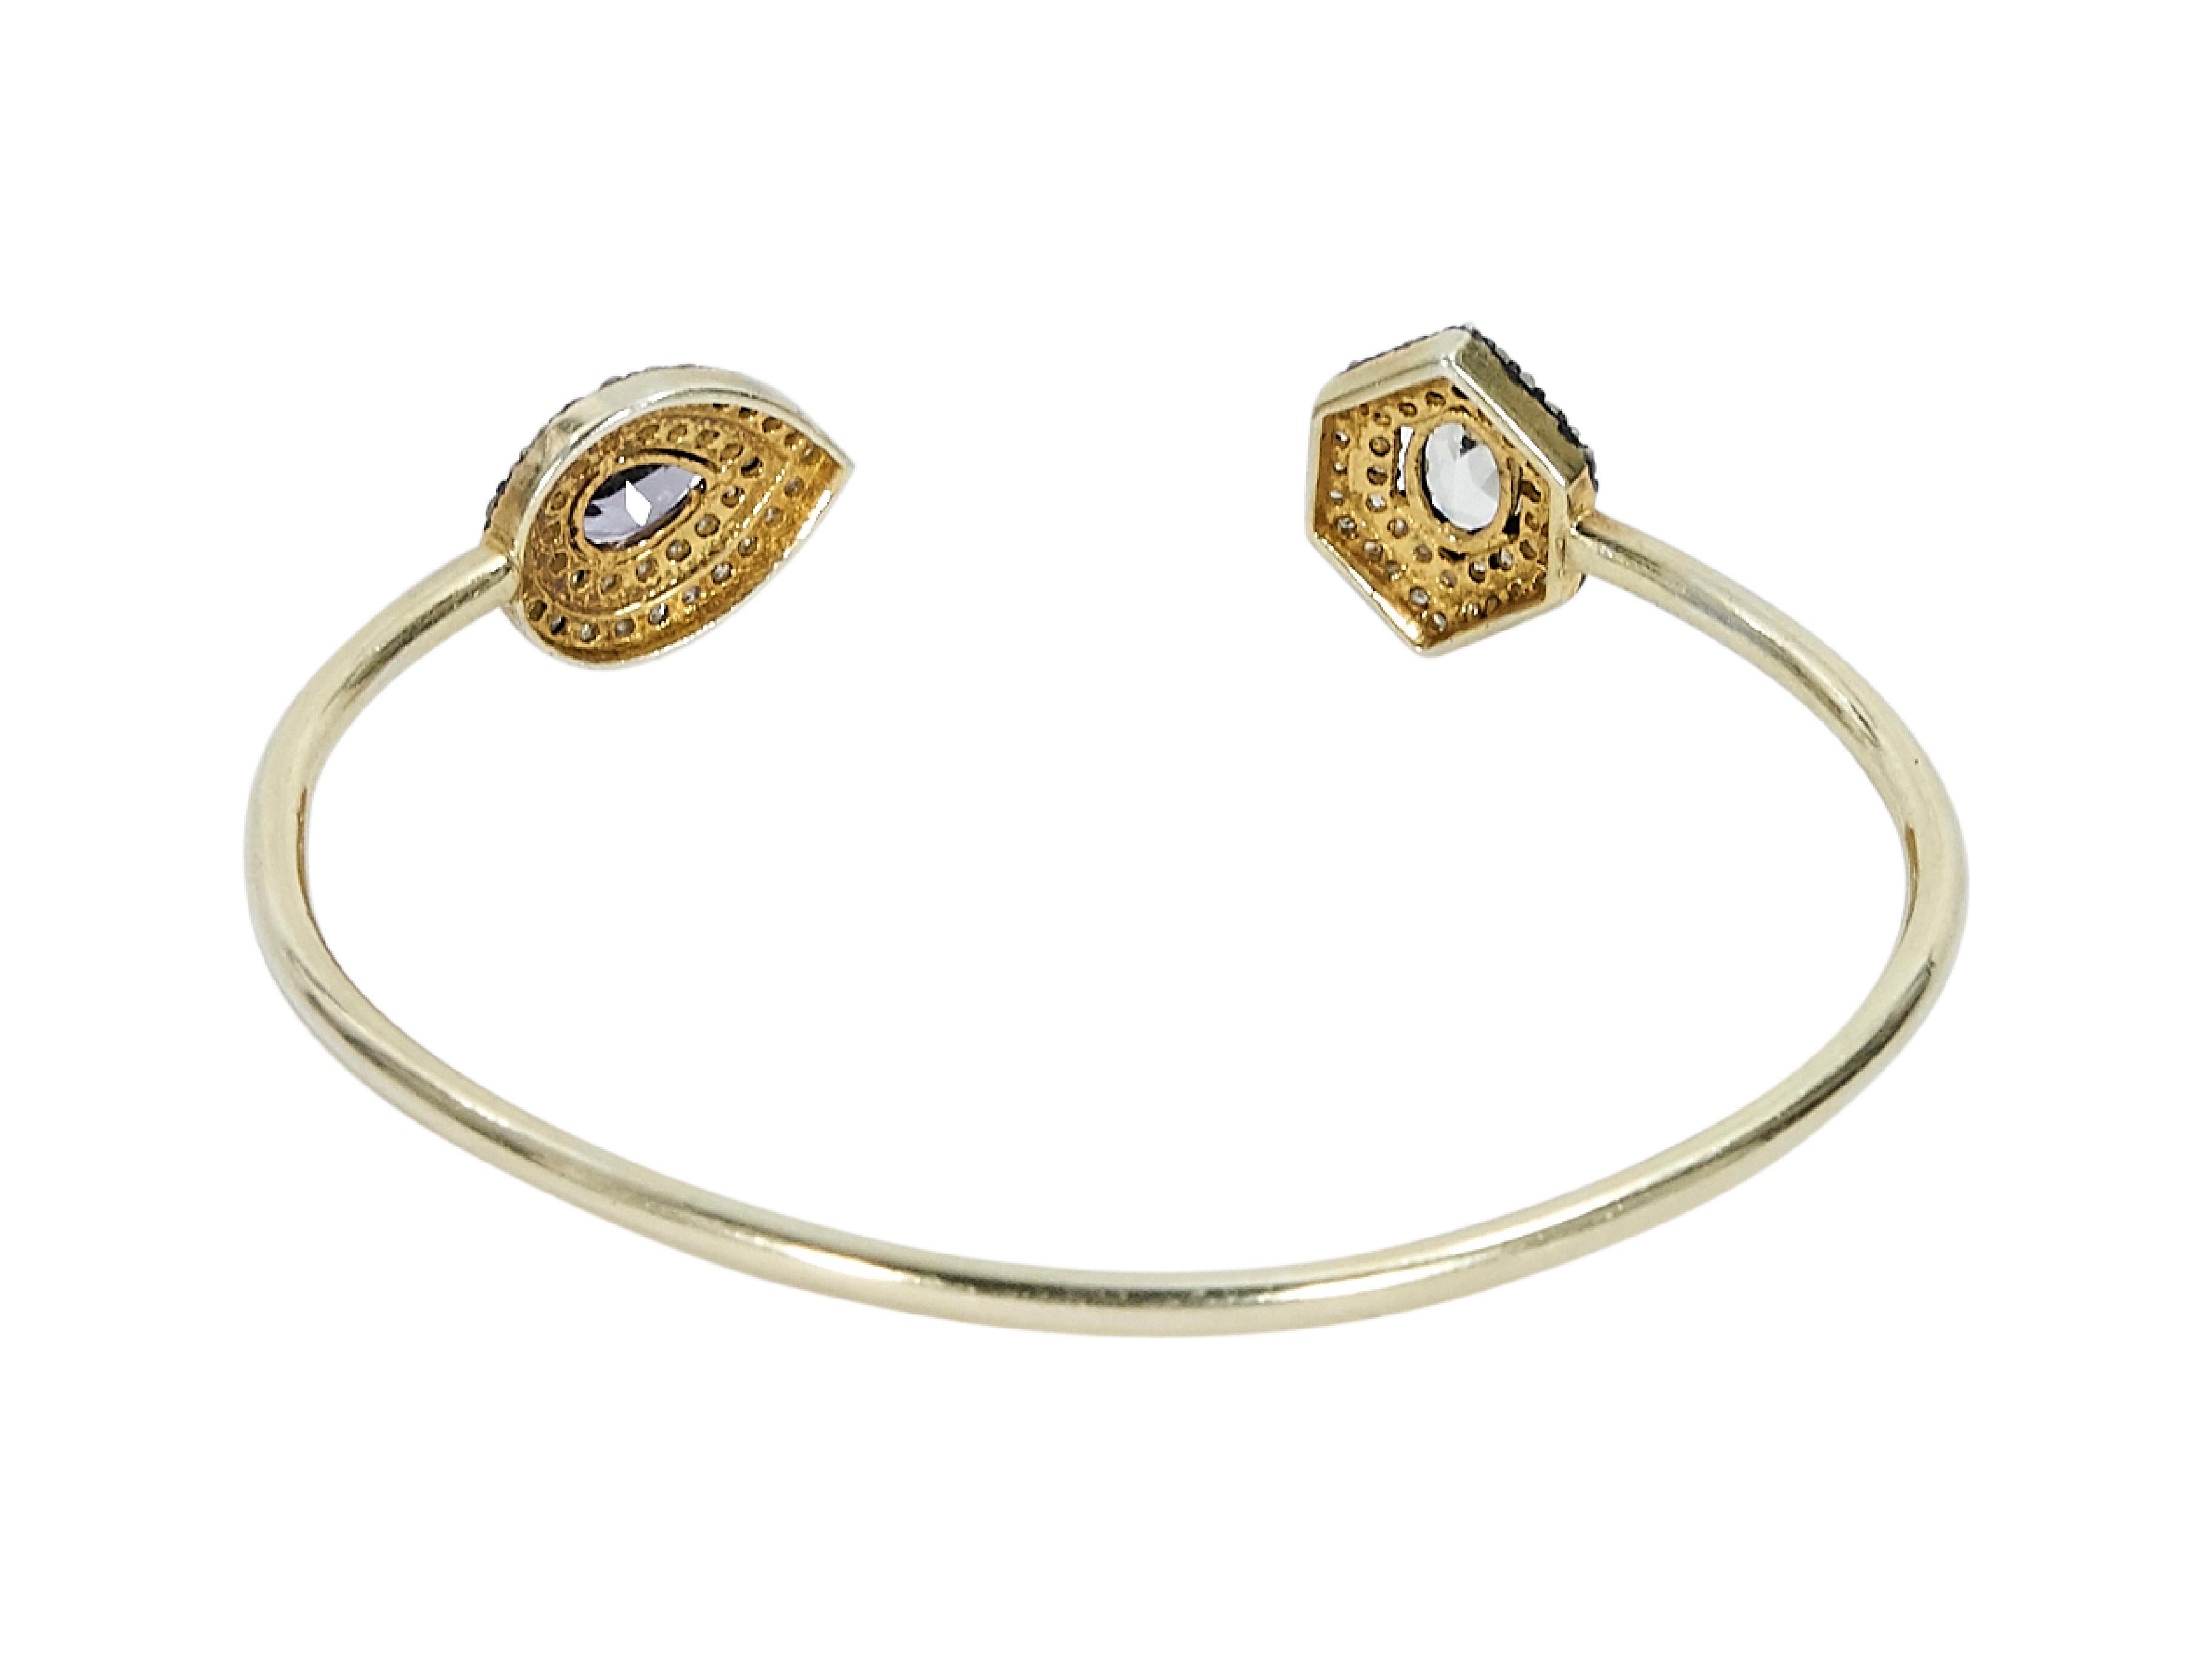 Product details:  Goldtone cuff bracelet by Jennifer Miller.  Crystal embellished ends.  7.5